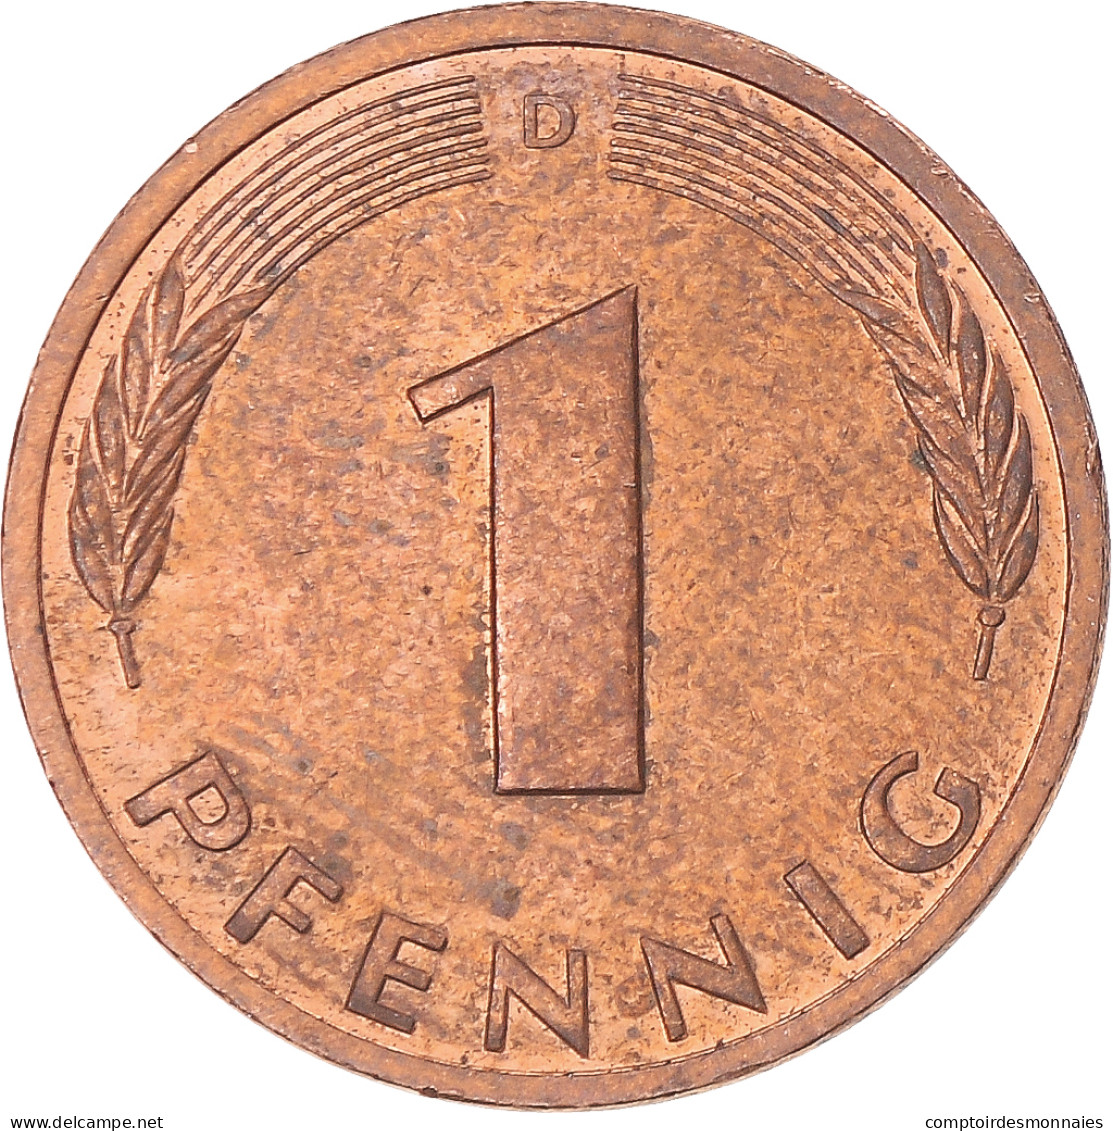 Monnaie, Allemagne, Pfennig, 1995 - 1 Pfennig